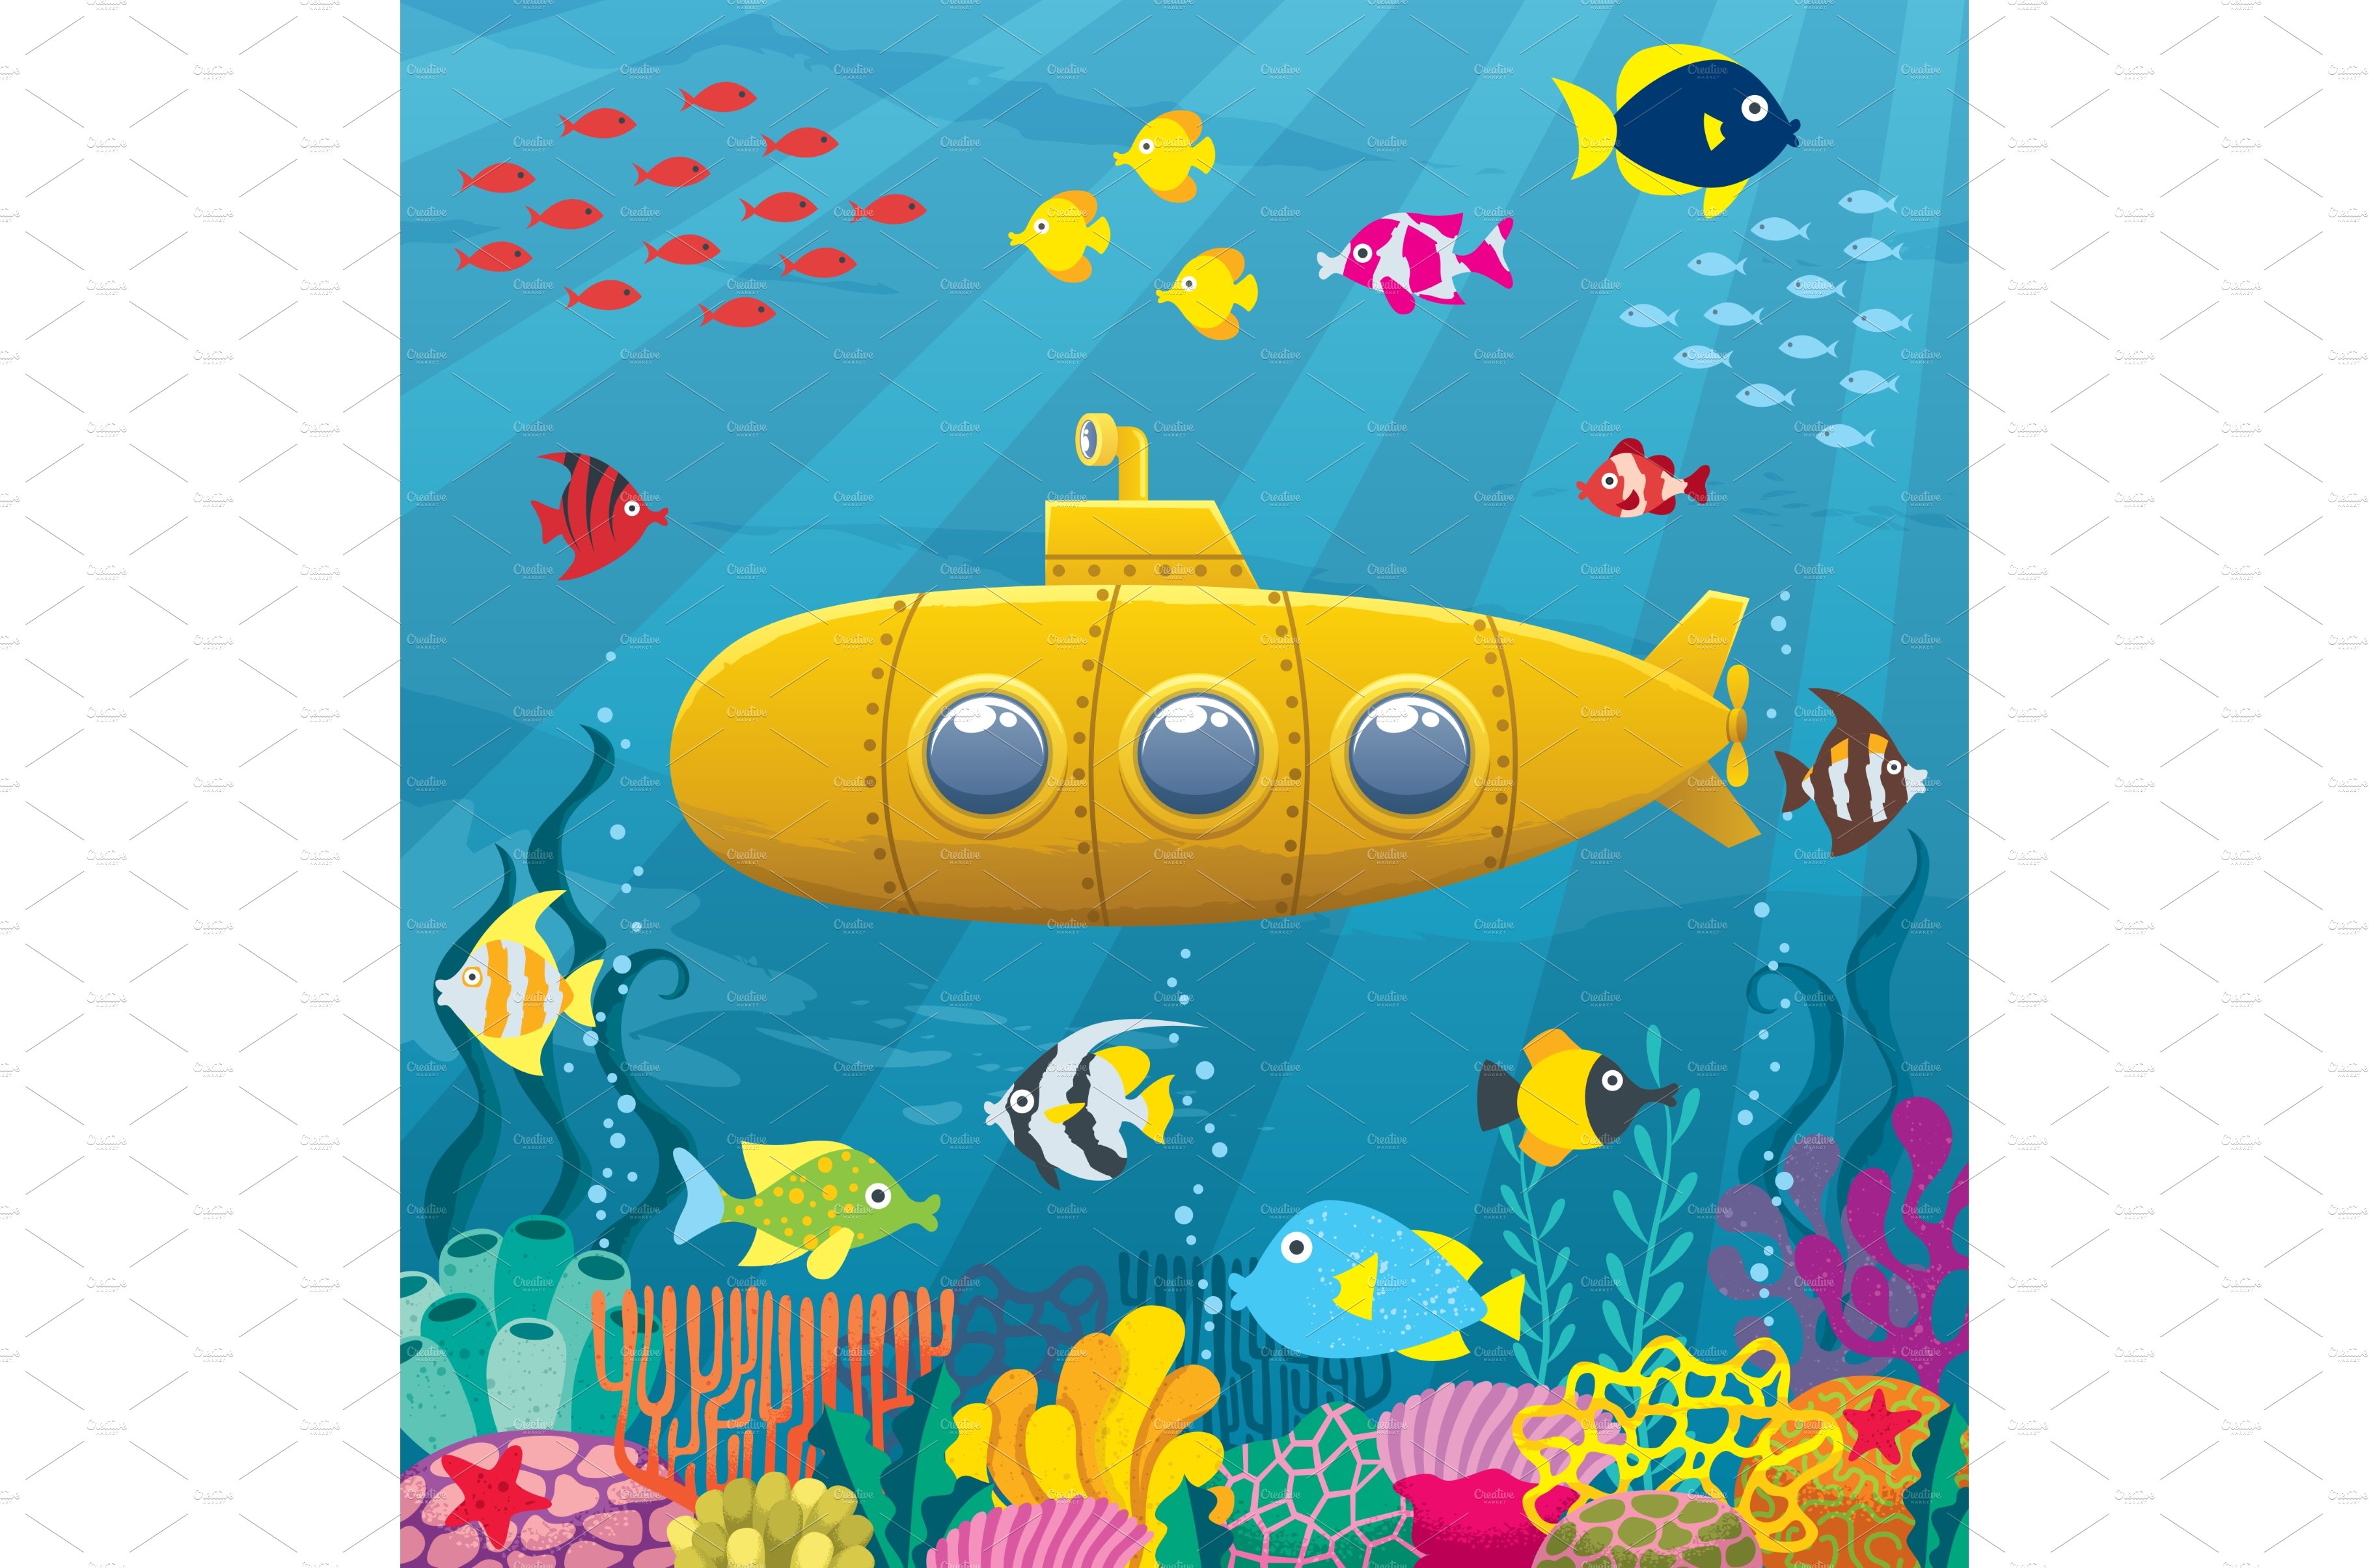 Submarine Background cover image.